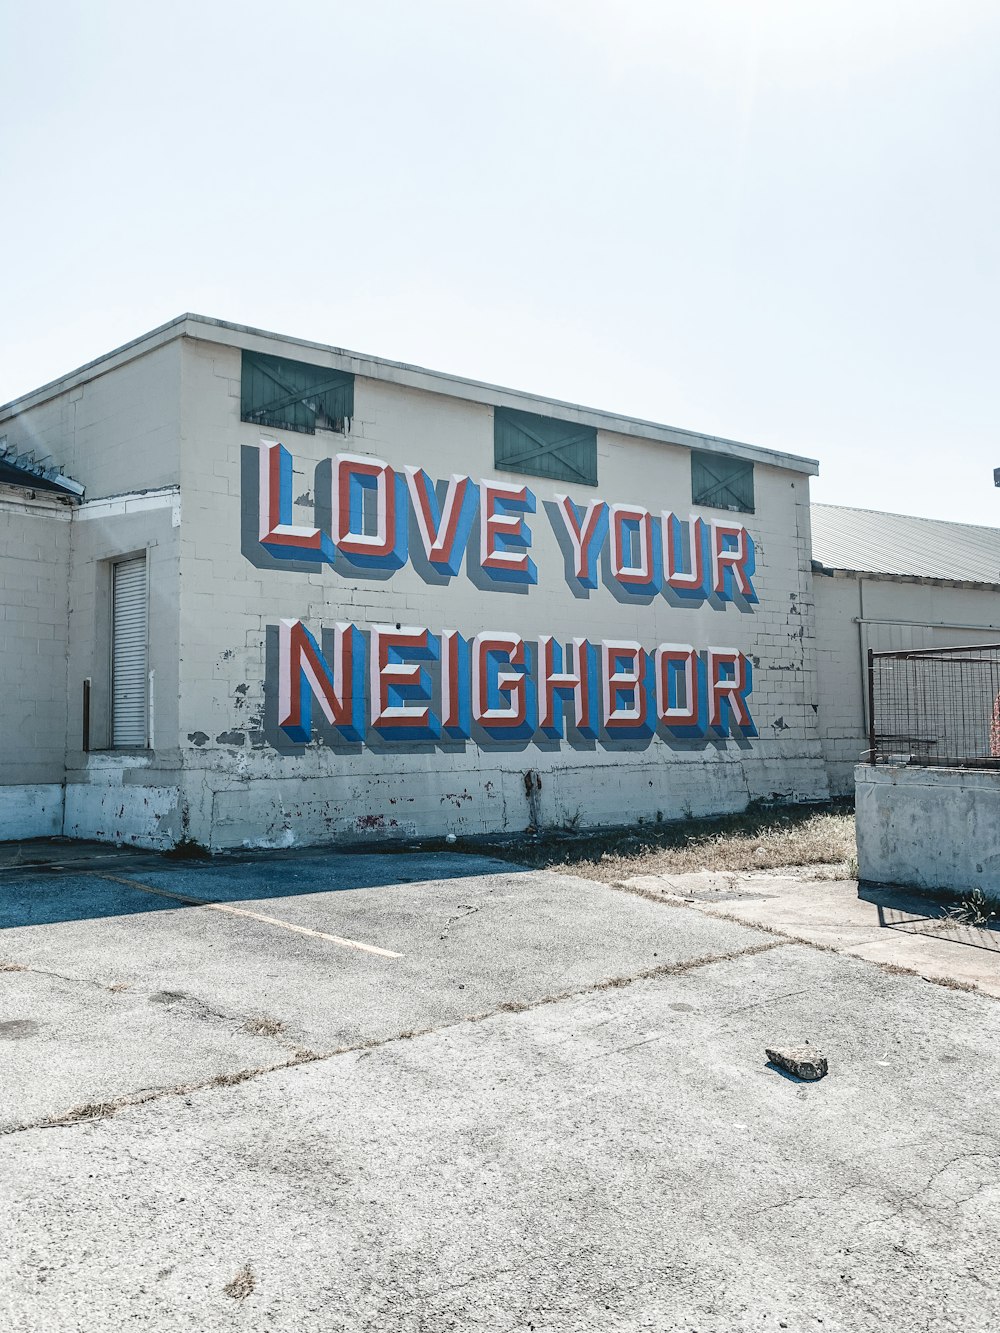 建物の側面にある「隣人を愛しなさい」と書かれた大きな看板